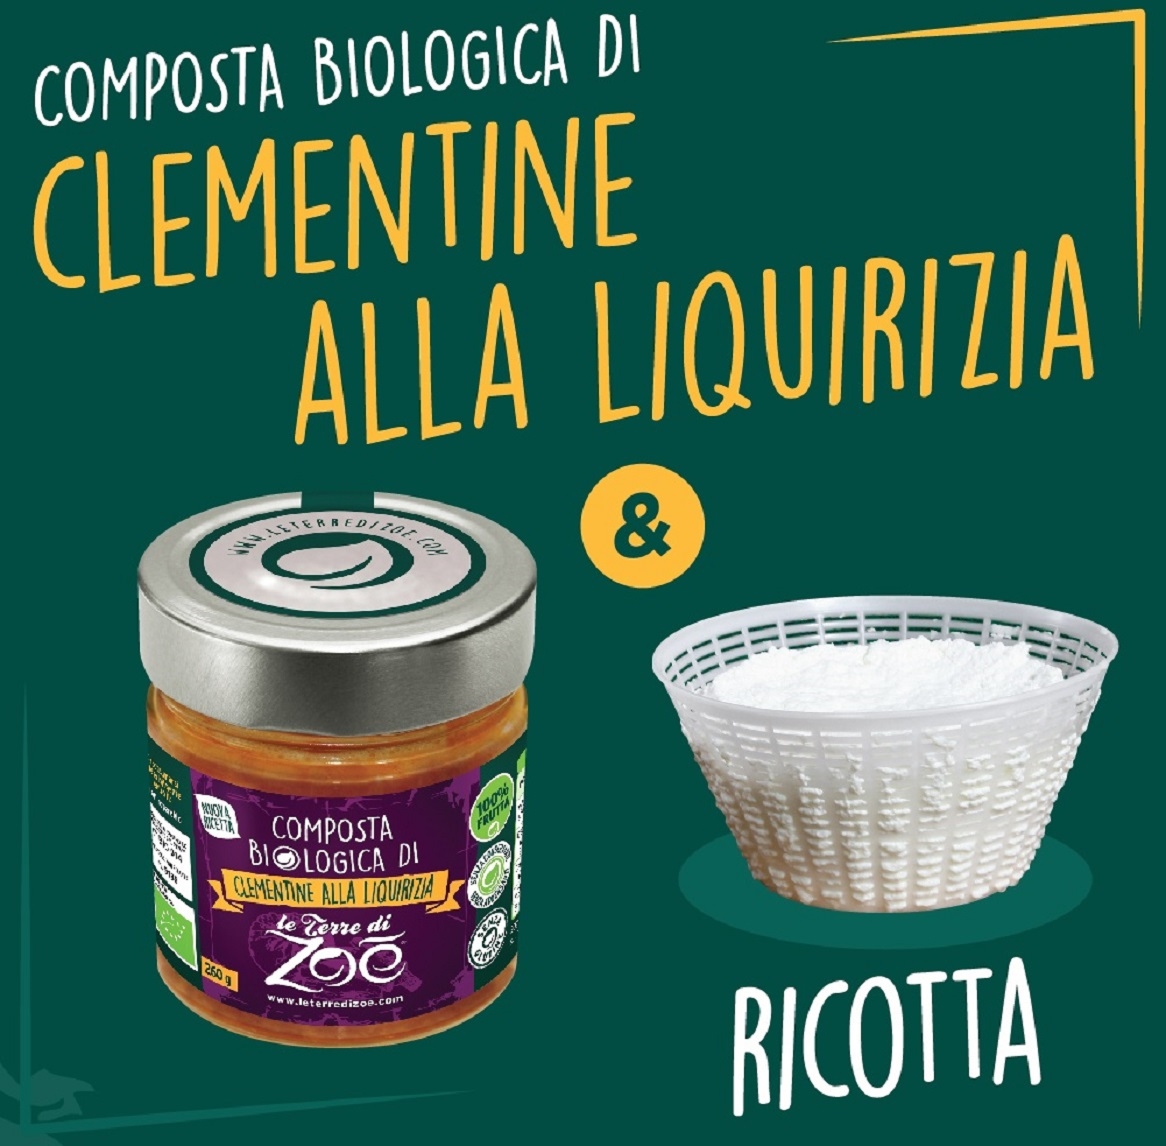 Composta biologica di Clementine e Liquirizia di Calabria 40g Le terre di zoè 4